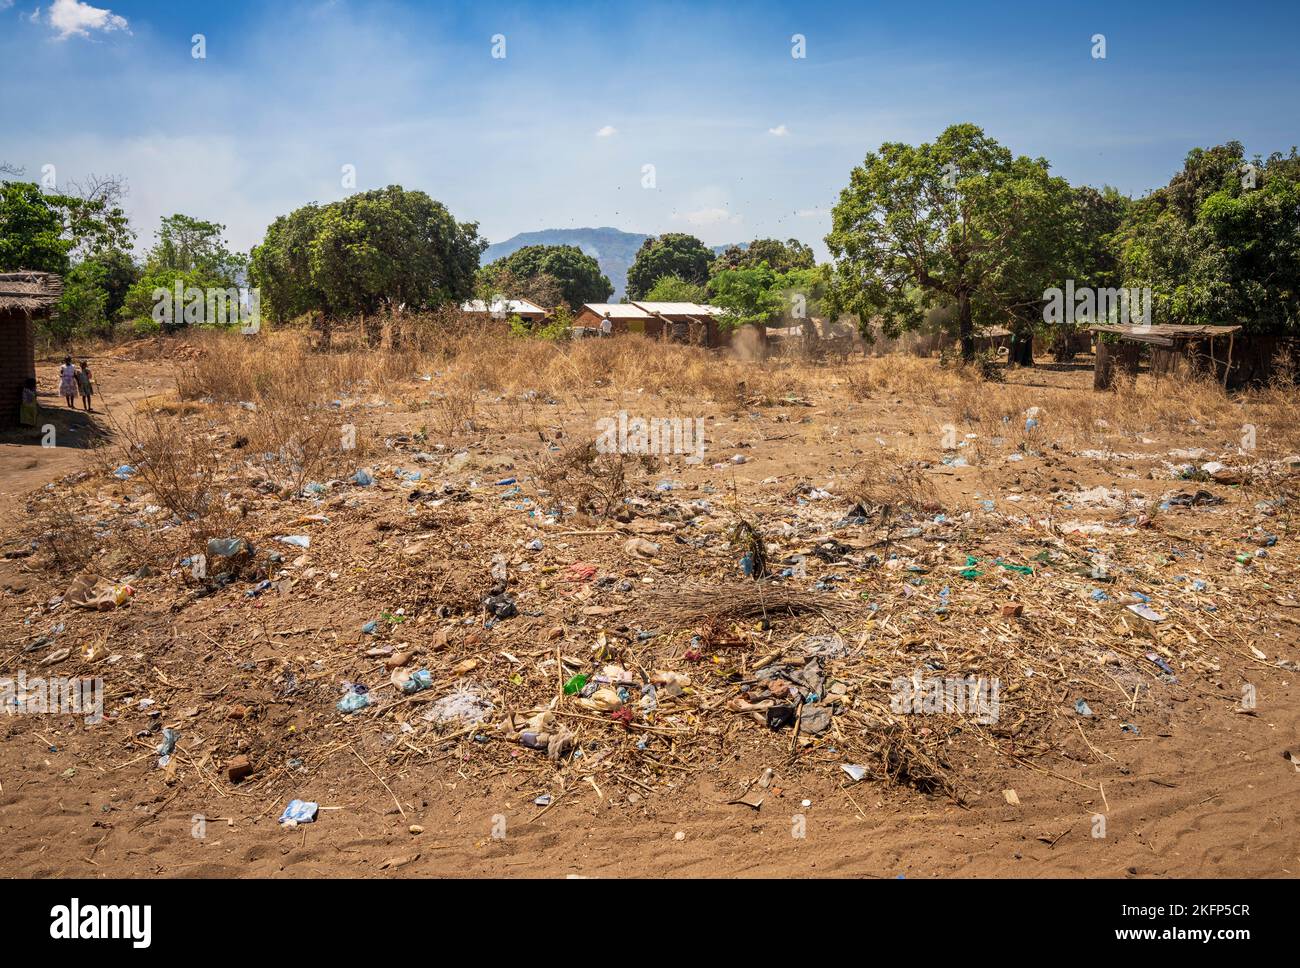 Residuos plásticos / basura al borde de la carretera en una aldea en las zonas rurales de Malawi Foto de stock